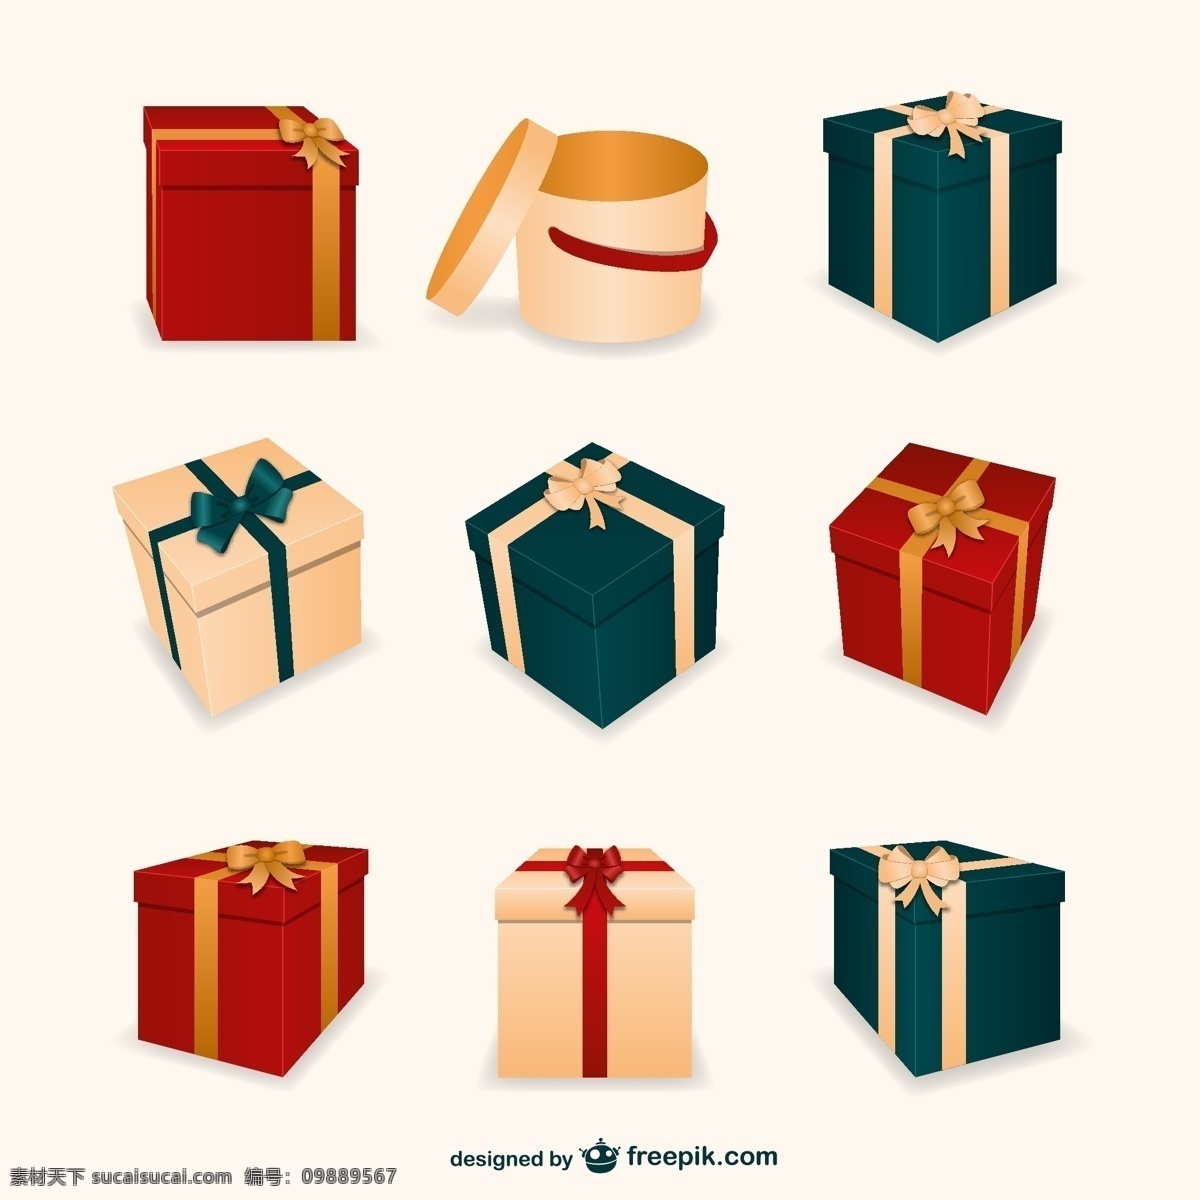 3圣诞礼物盒 圣诞 礼品 装盒 3d 目前 礼物 圣诞节